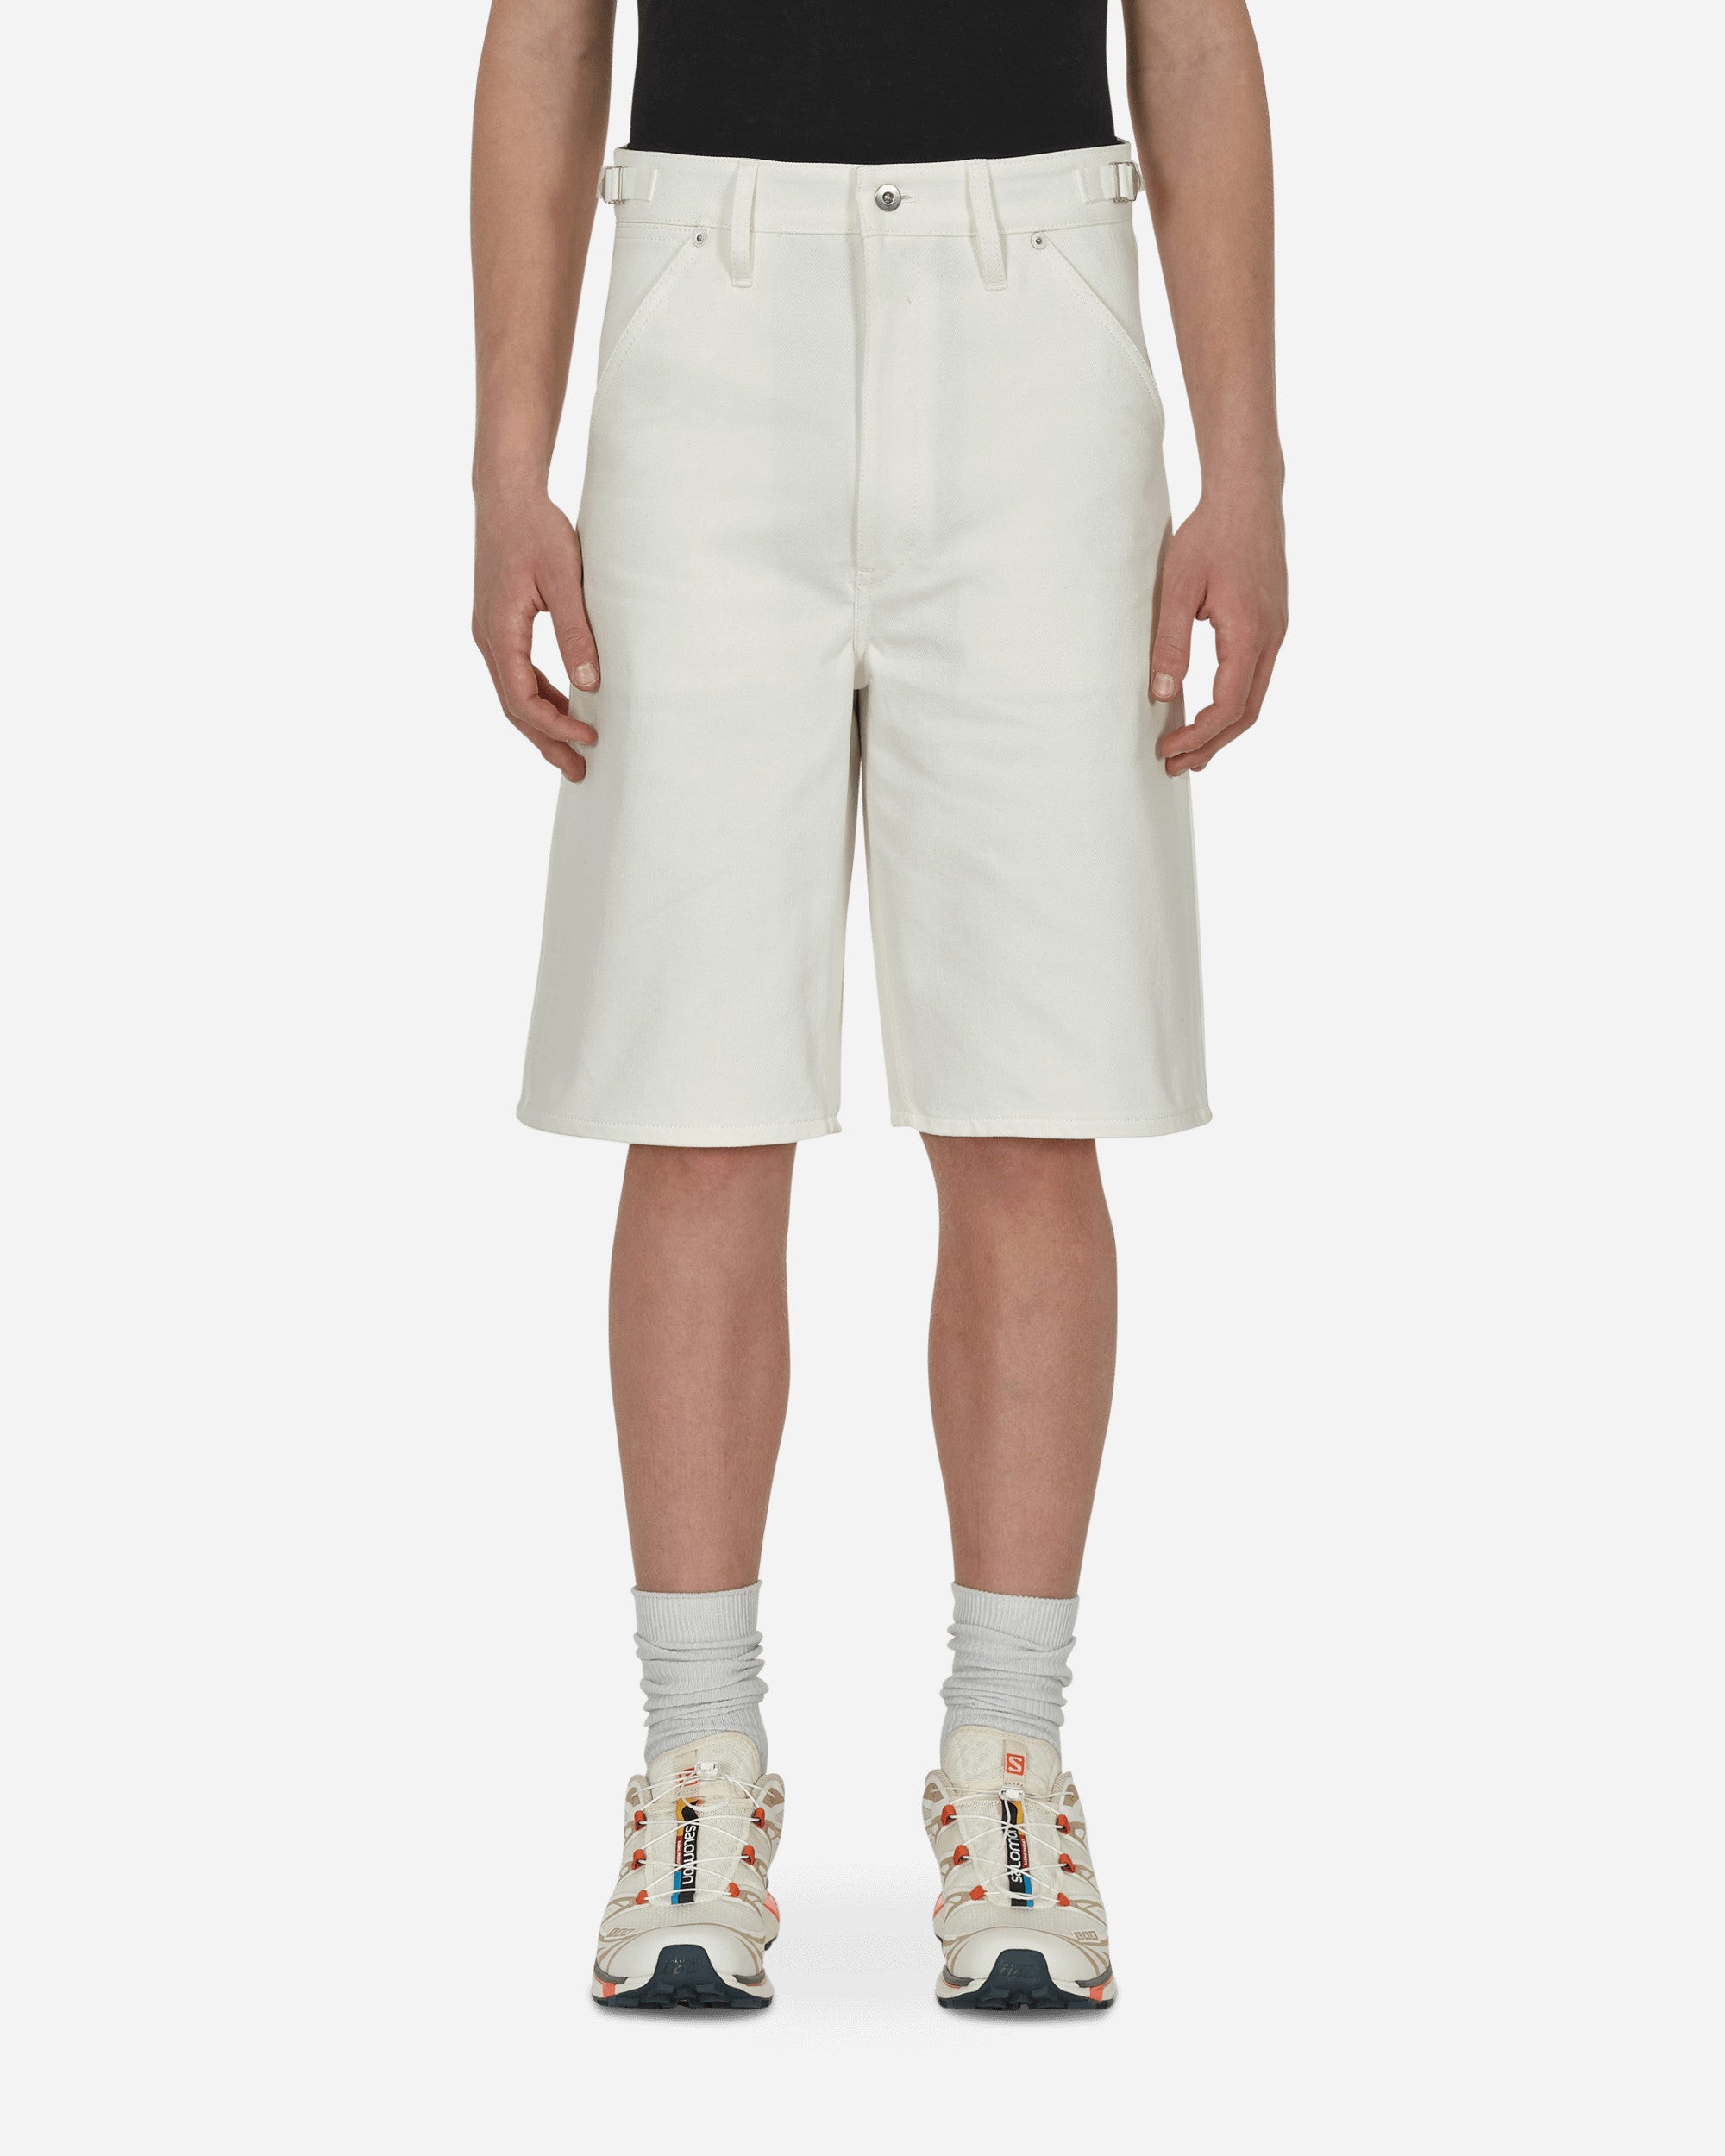 Jil Sander Denim Trouser 23 Shorts - New White Denim Washed Natural Shorts Short JPUU663168-MU246300 102